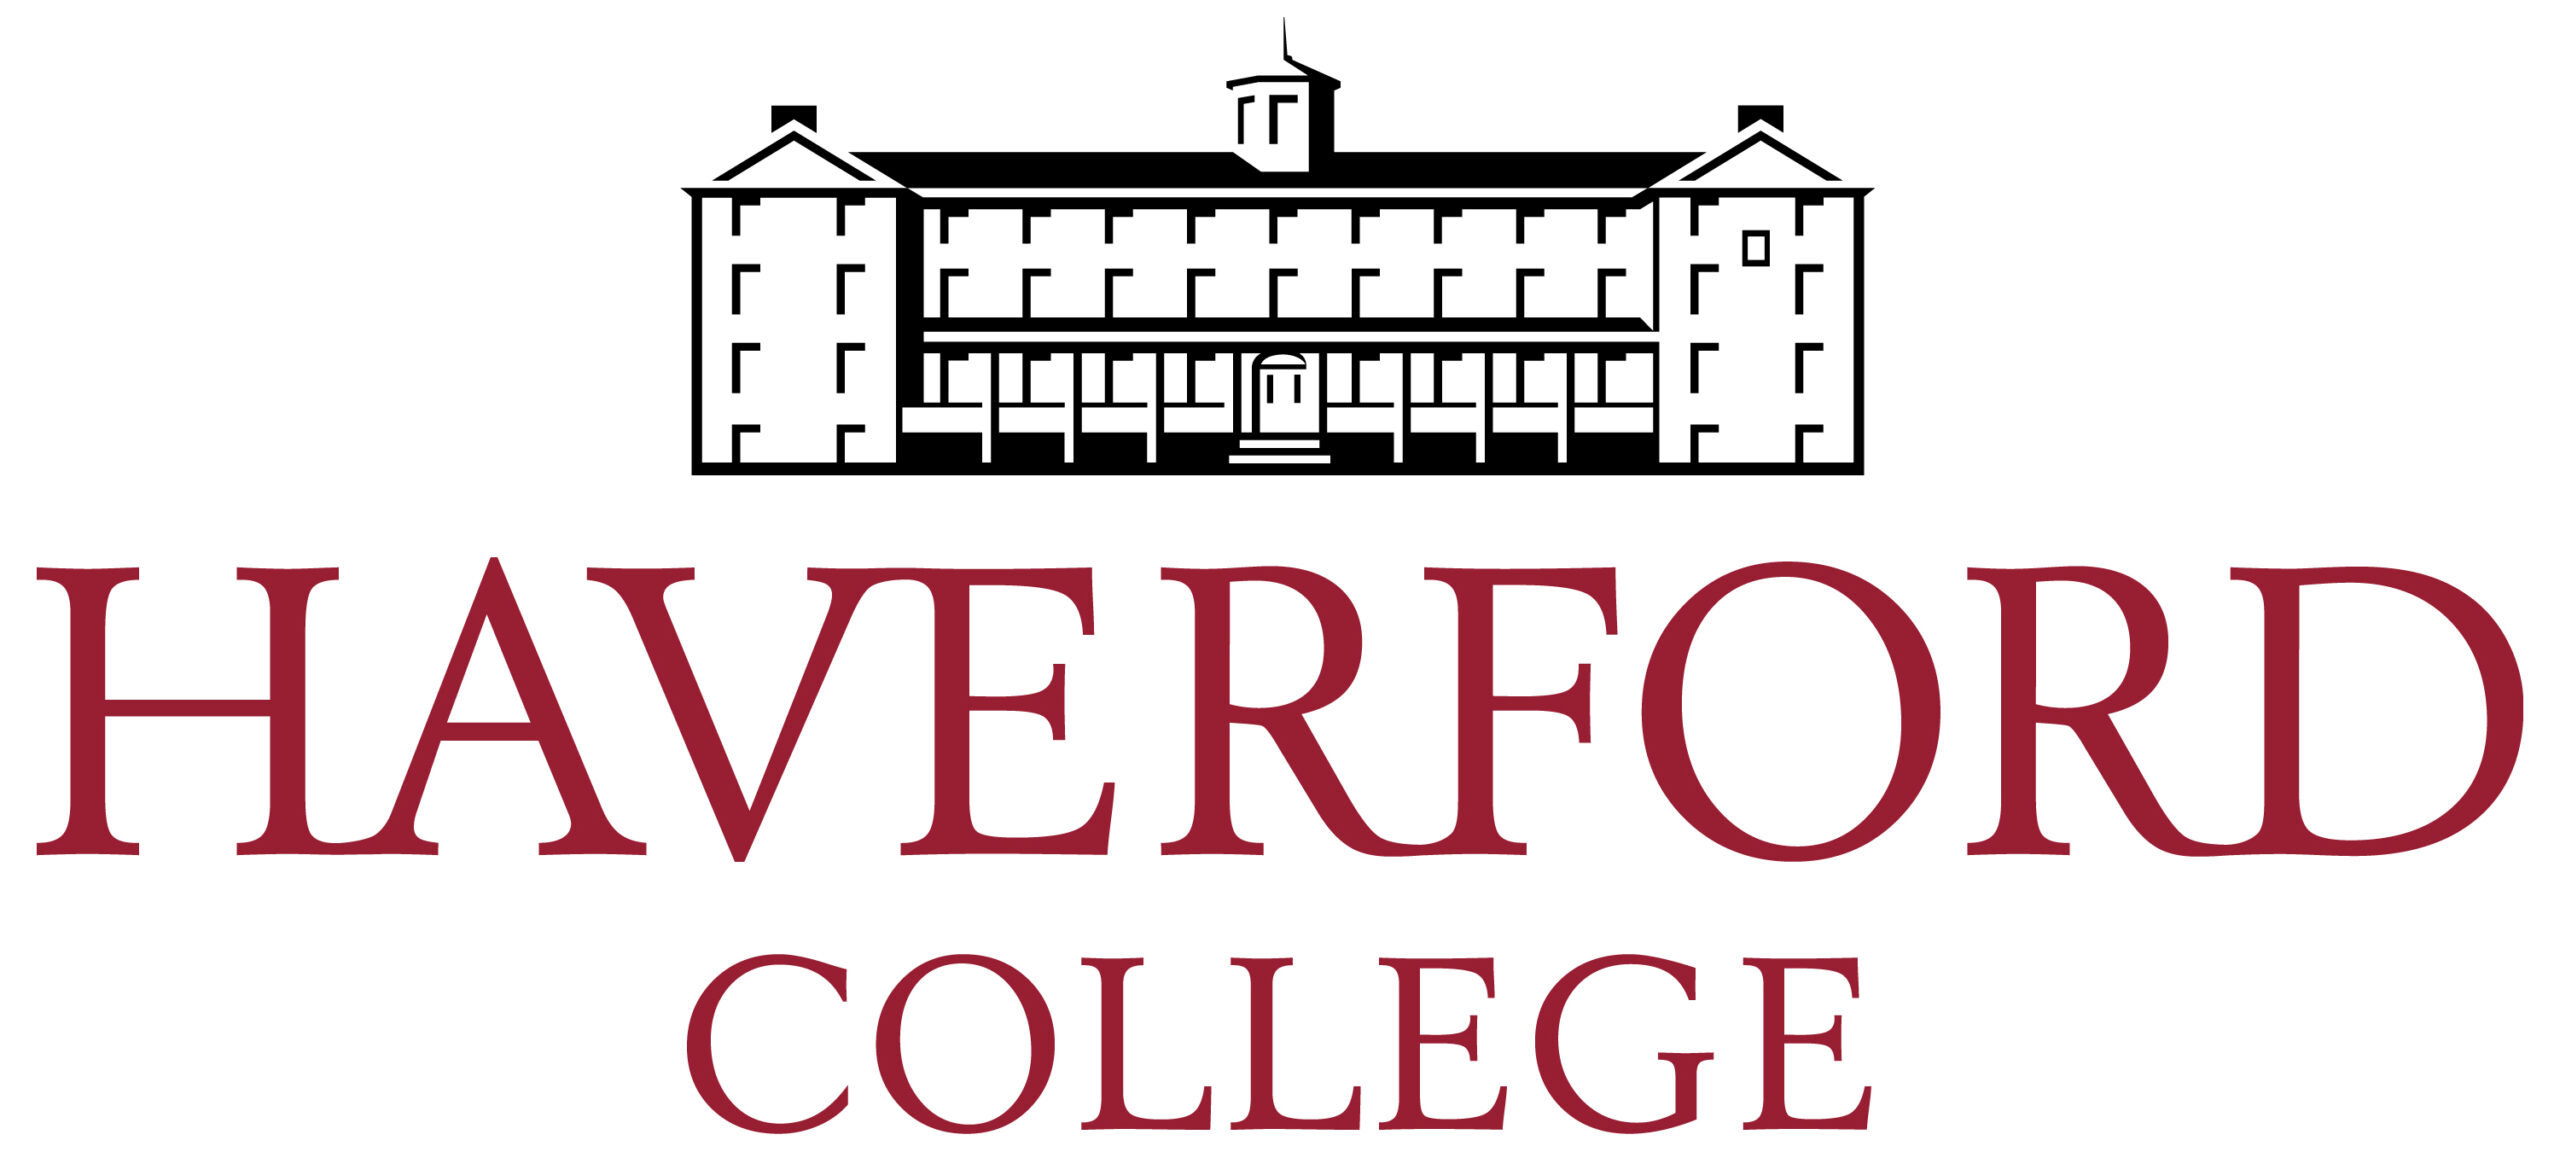 Хаверфордский колледж лого